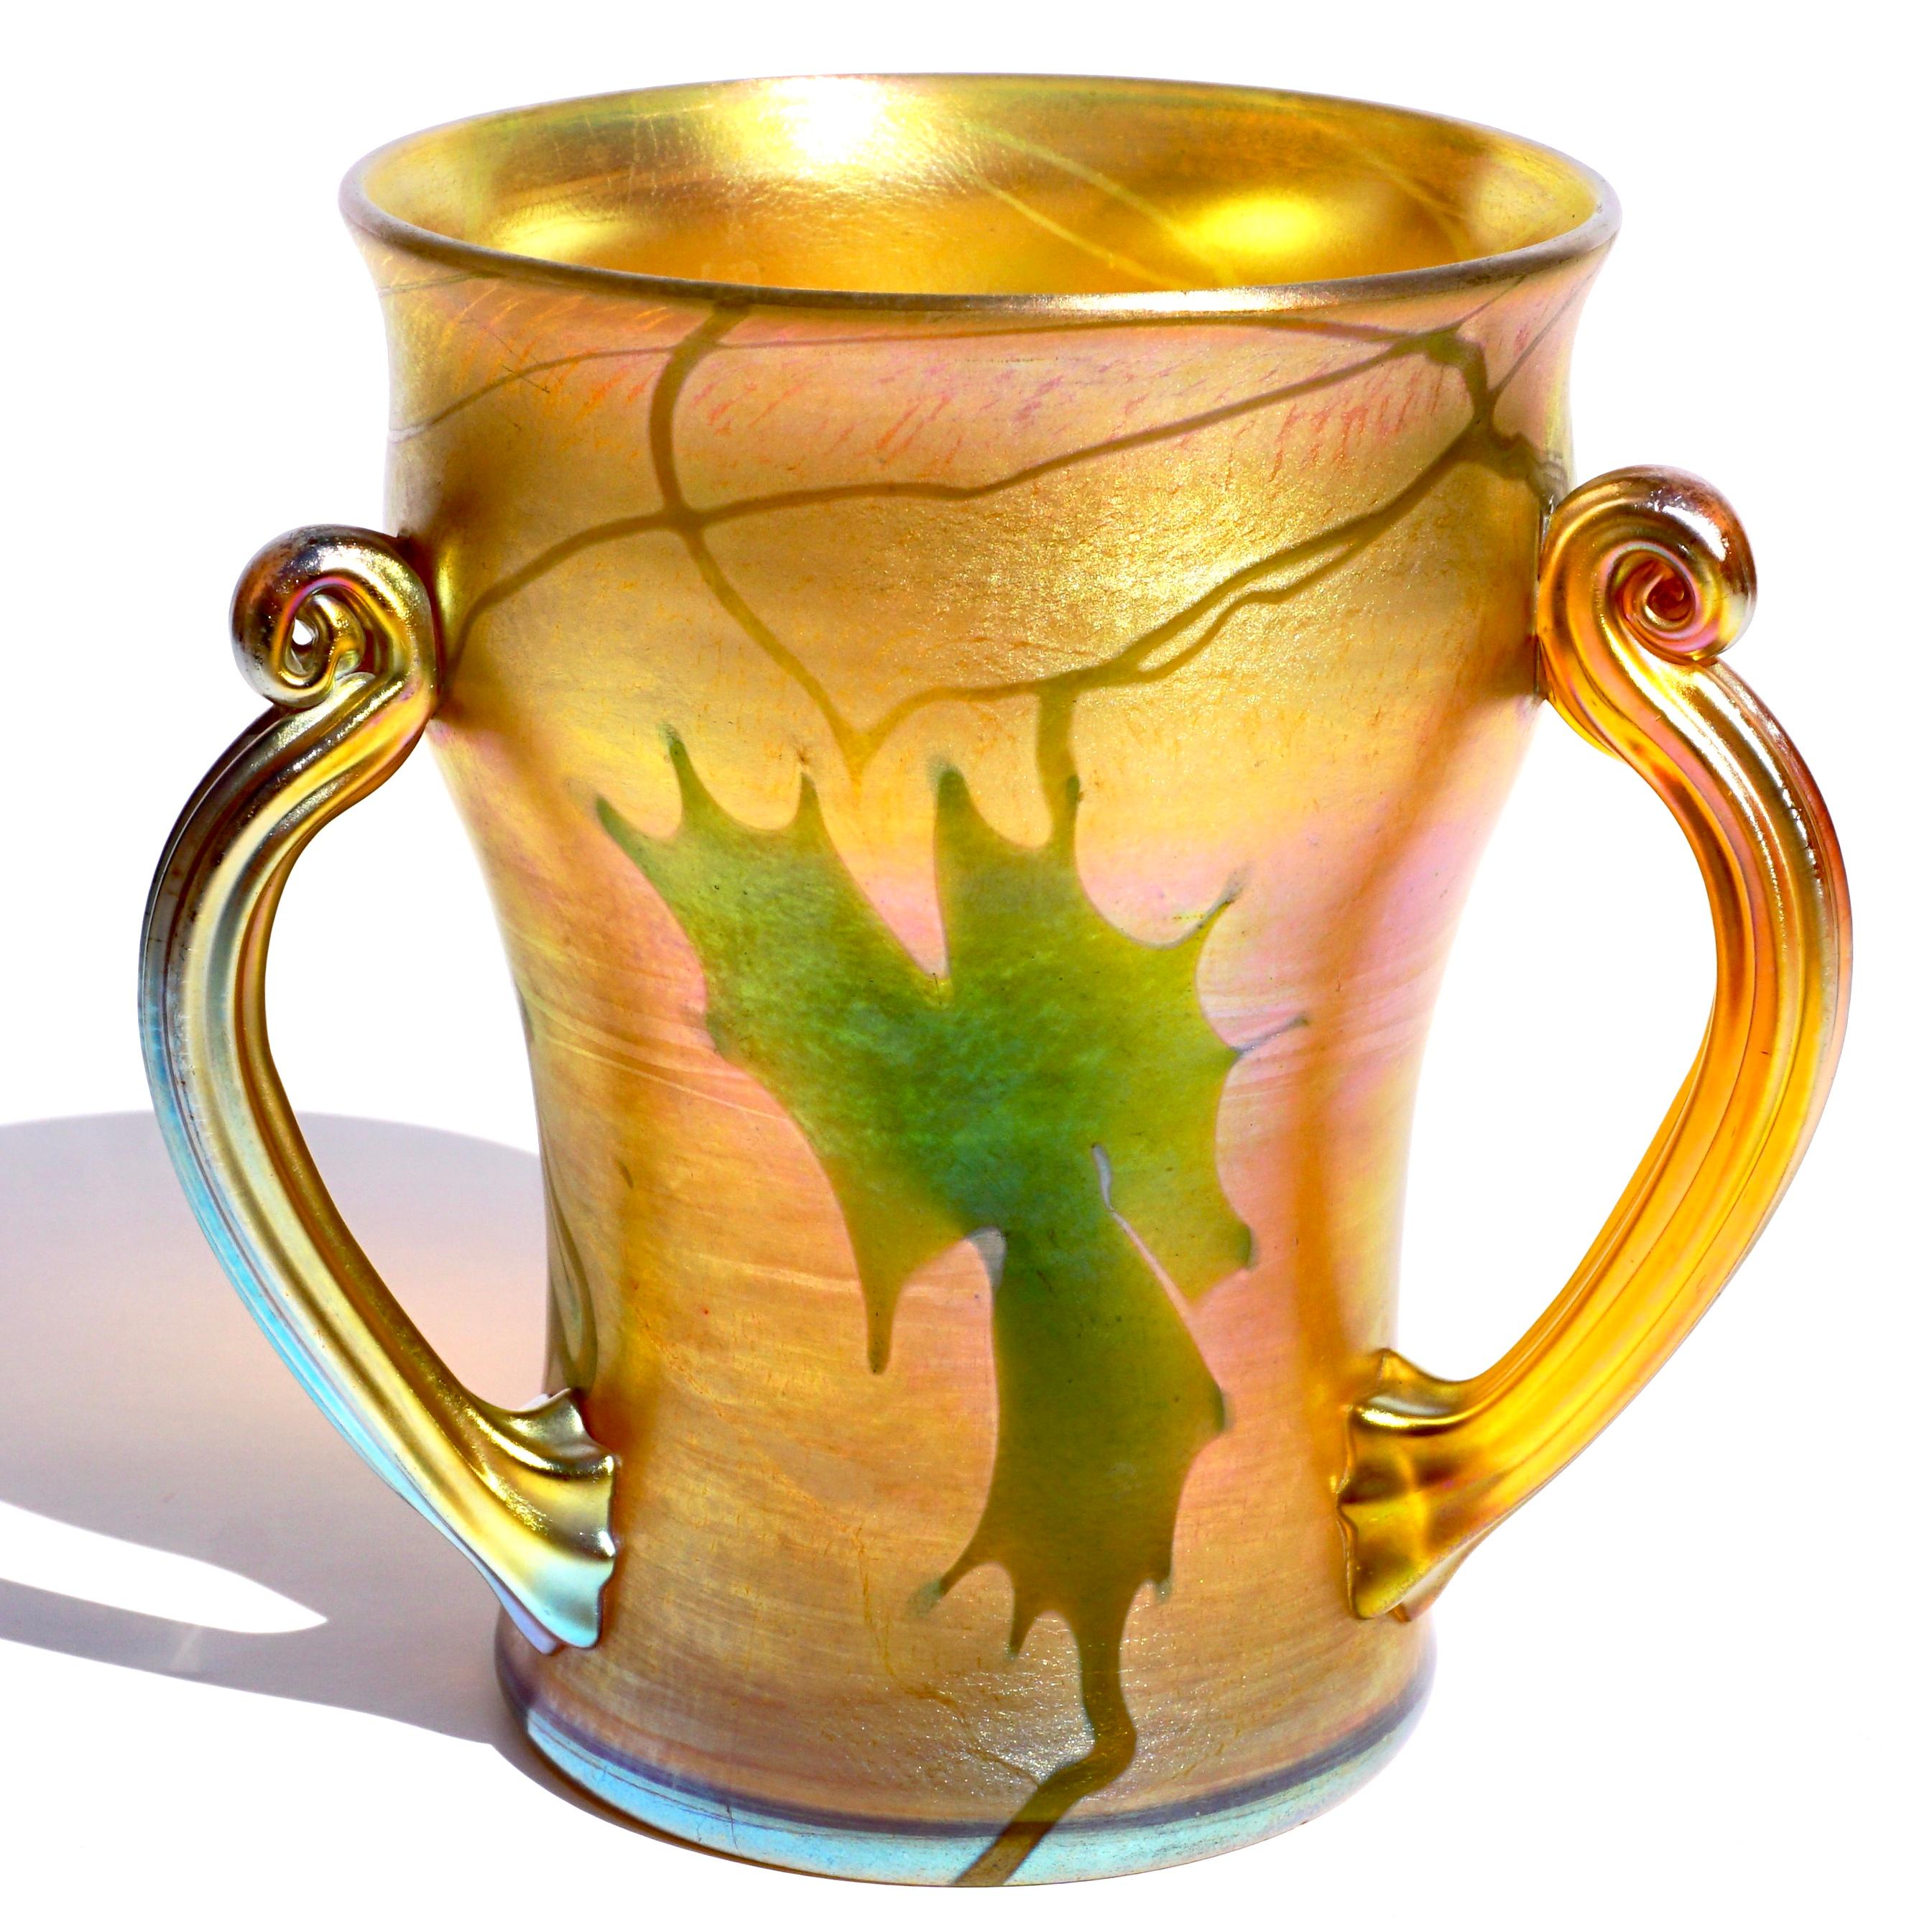 Tiffany Studios Favrile dekoriert Glas liebenden Tasse mit drei gewundenen Henkel. 
Um 1910
Eingraviert 